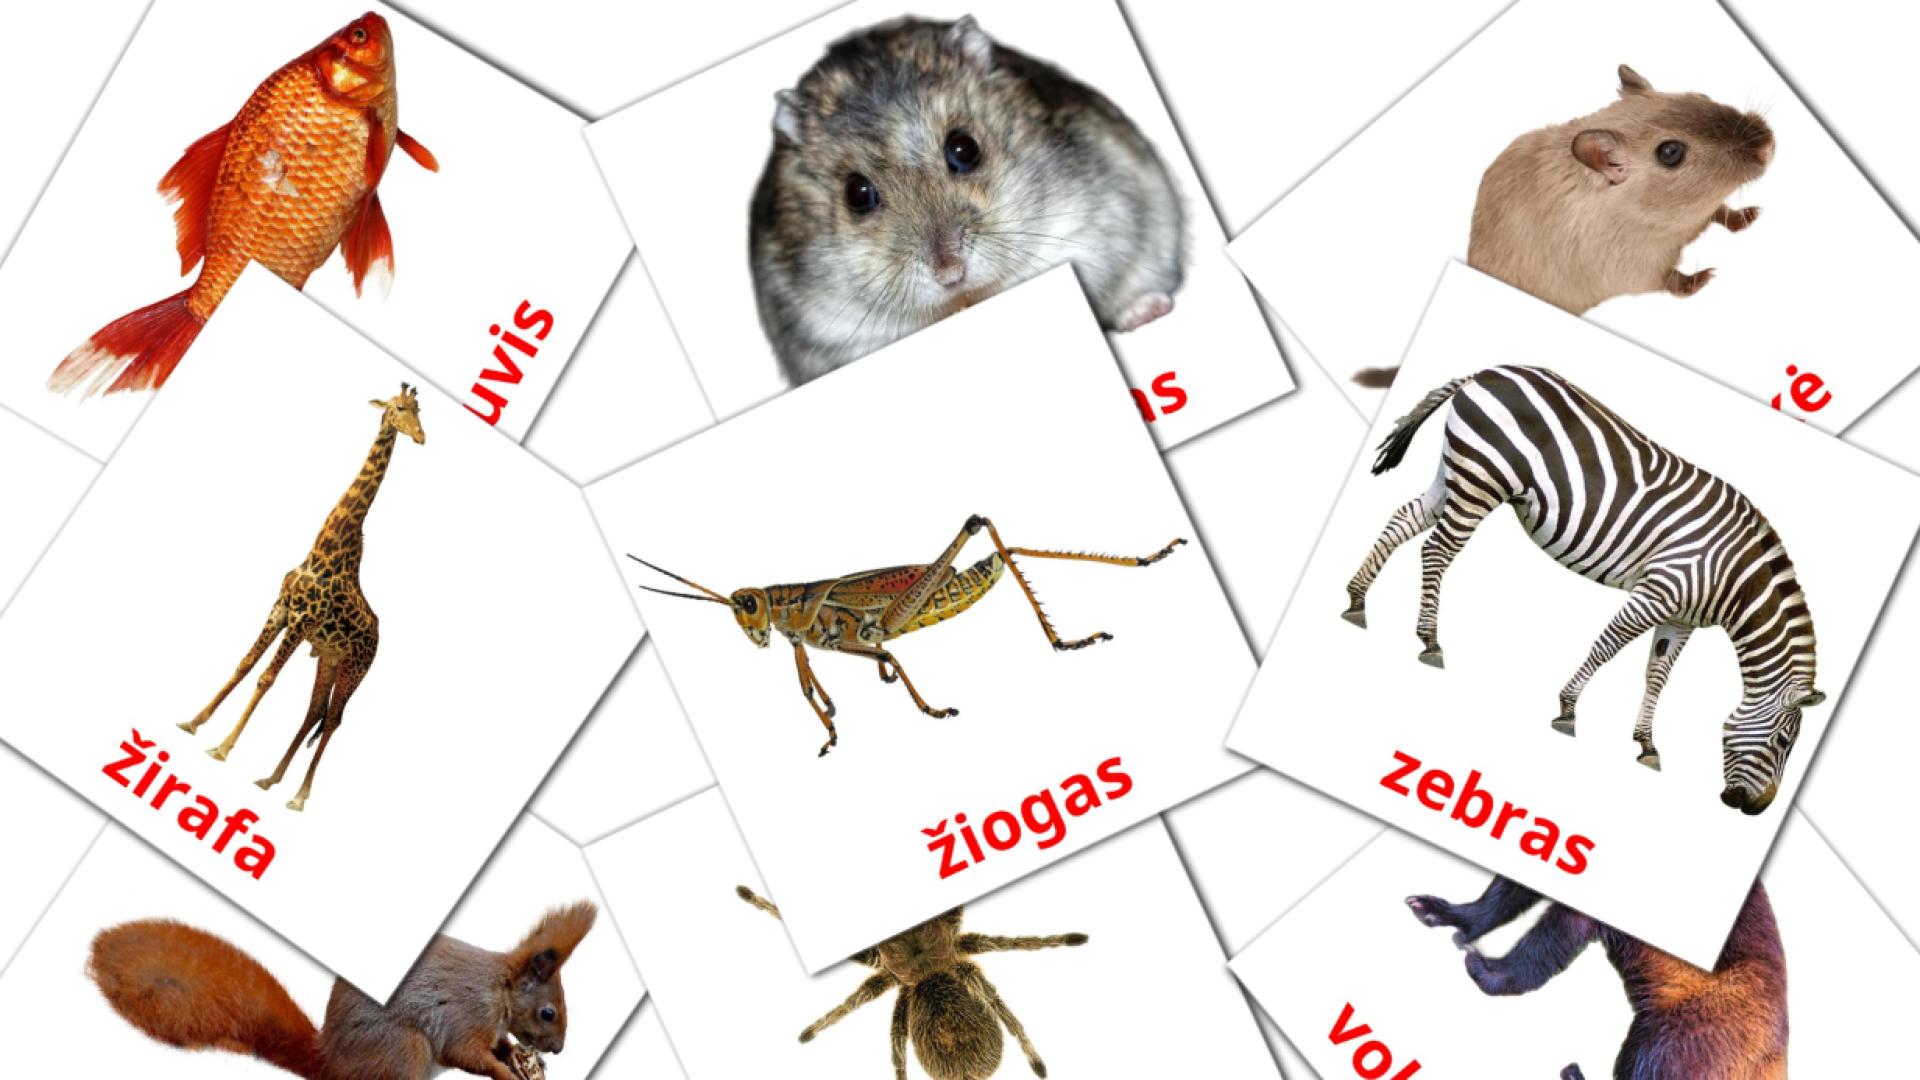 Litauisch Gyvūnaie Vokabelkarteikarten